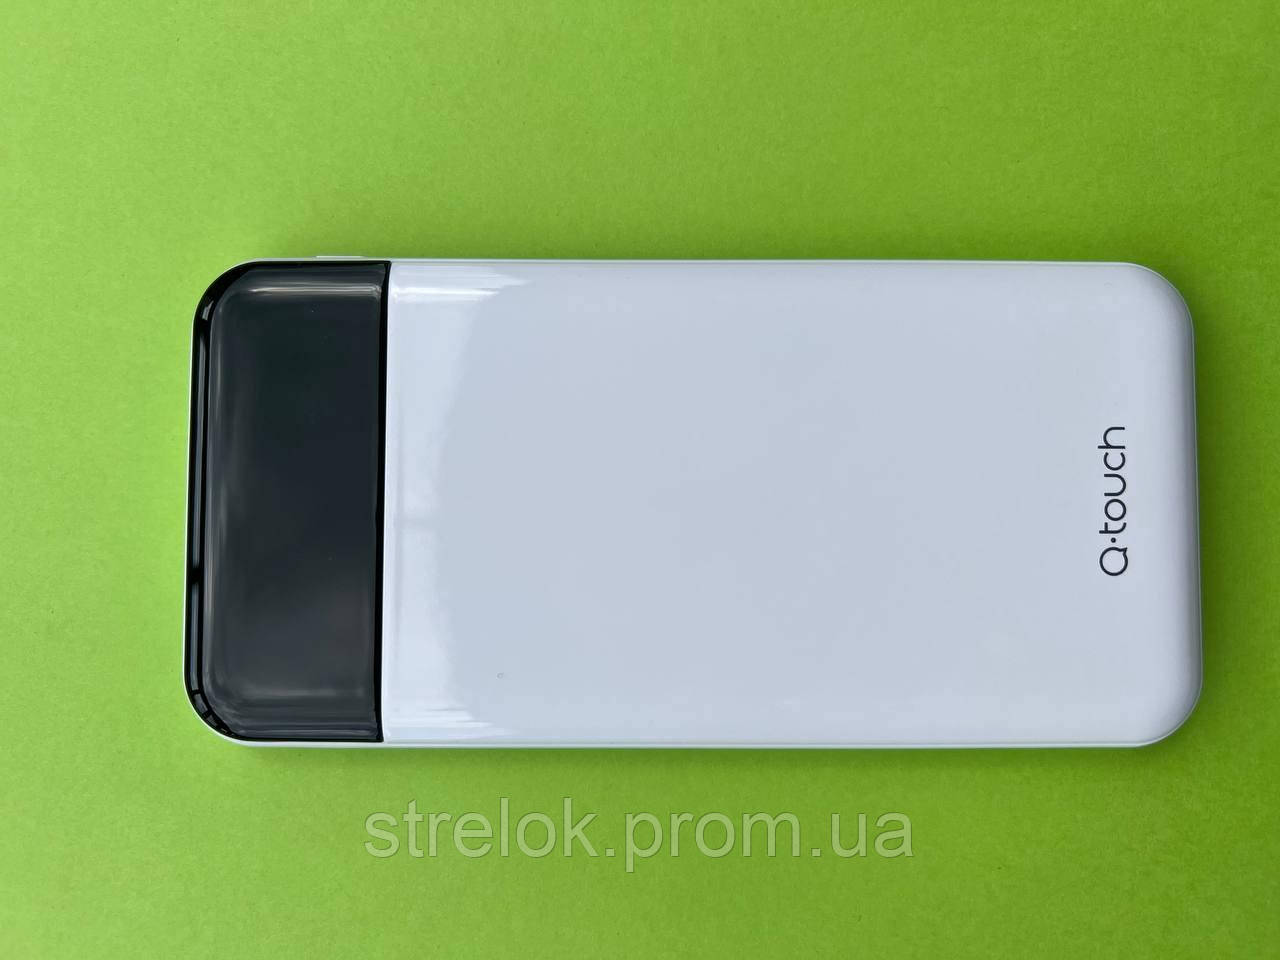 Зовнішній акумулятор Power bank Q-Touch QPB-06 (10000 мА·год, зроблений на європейський ринок)